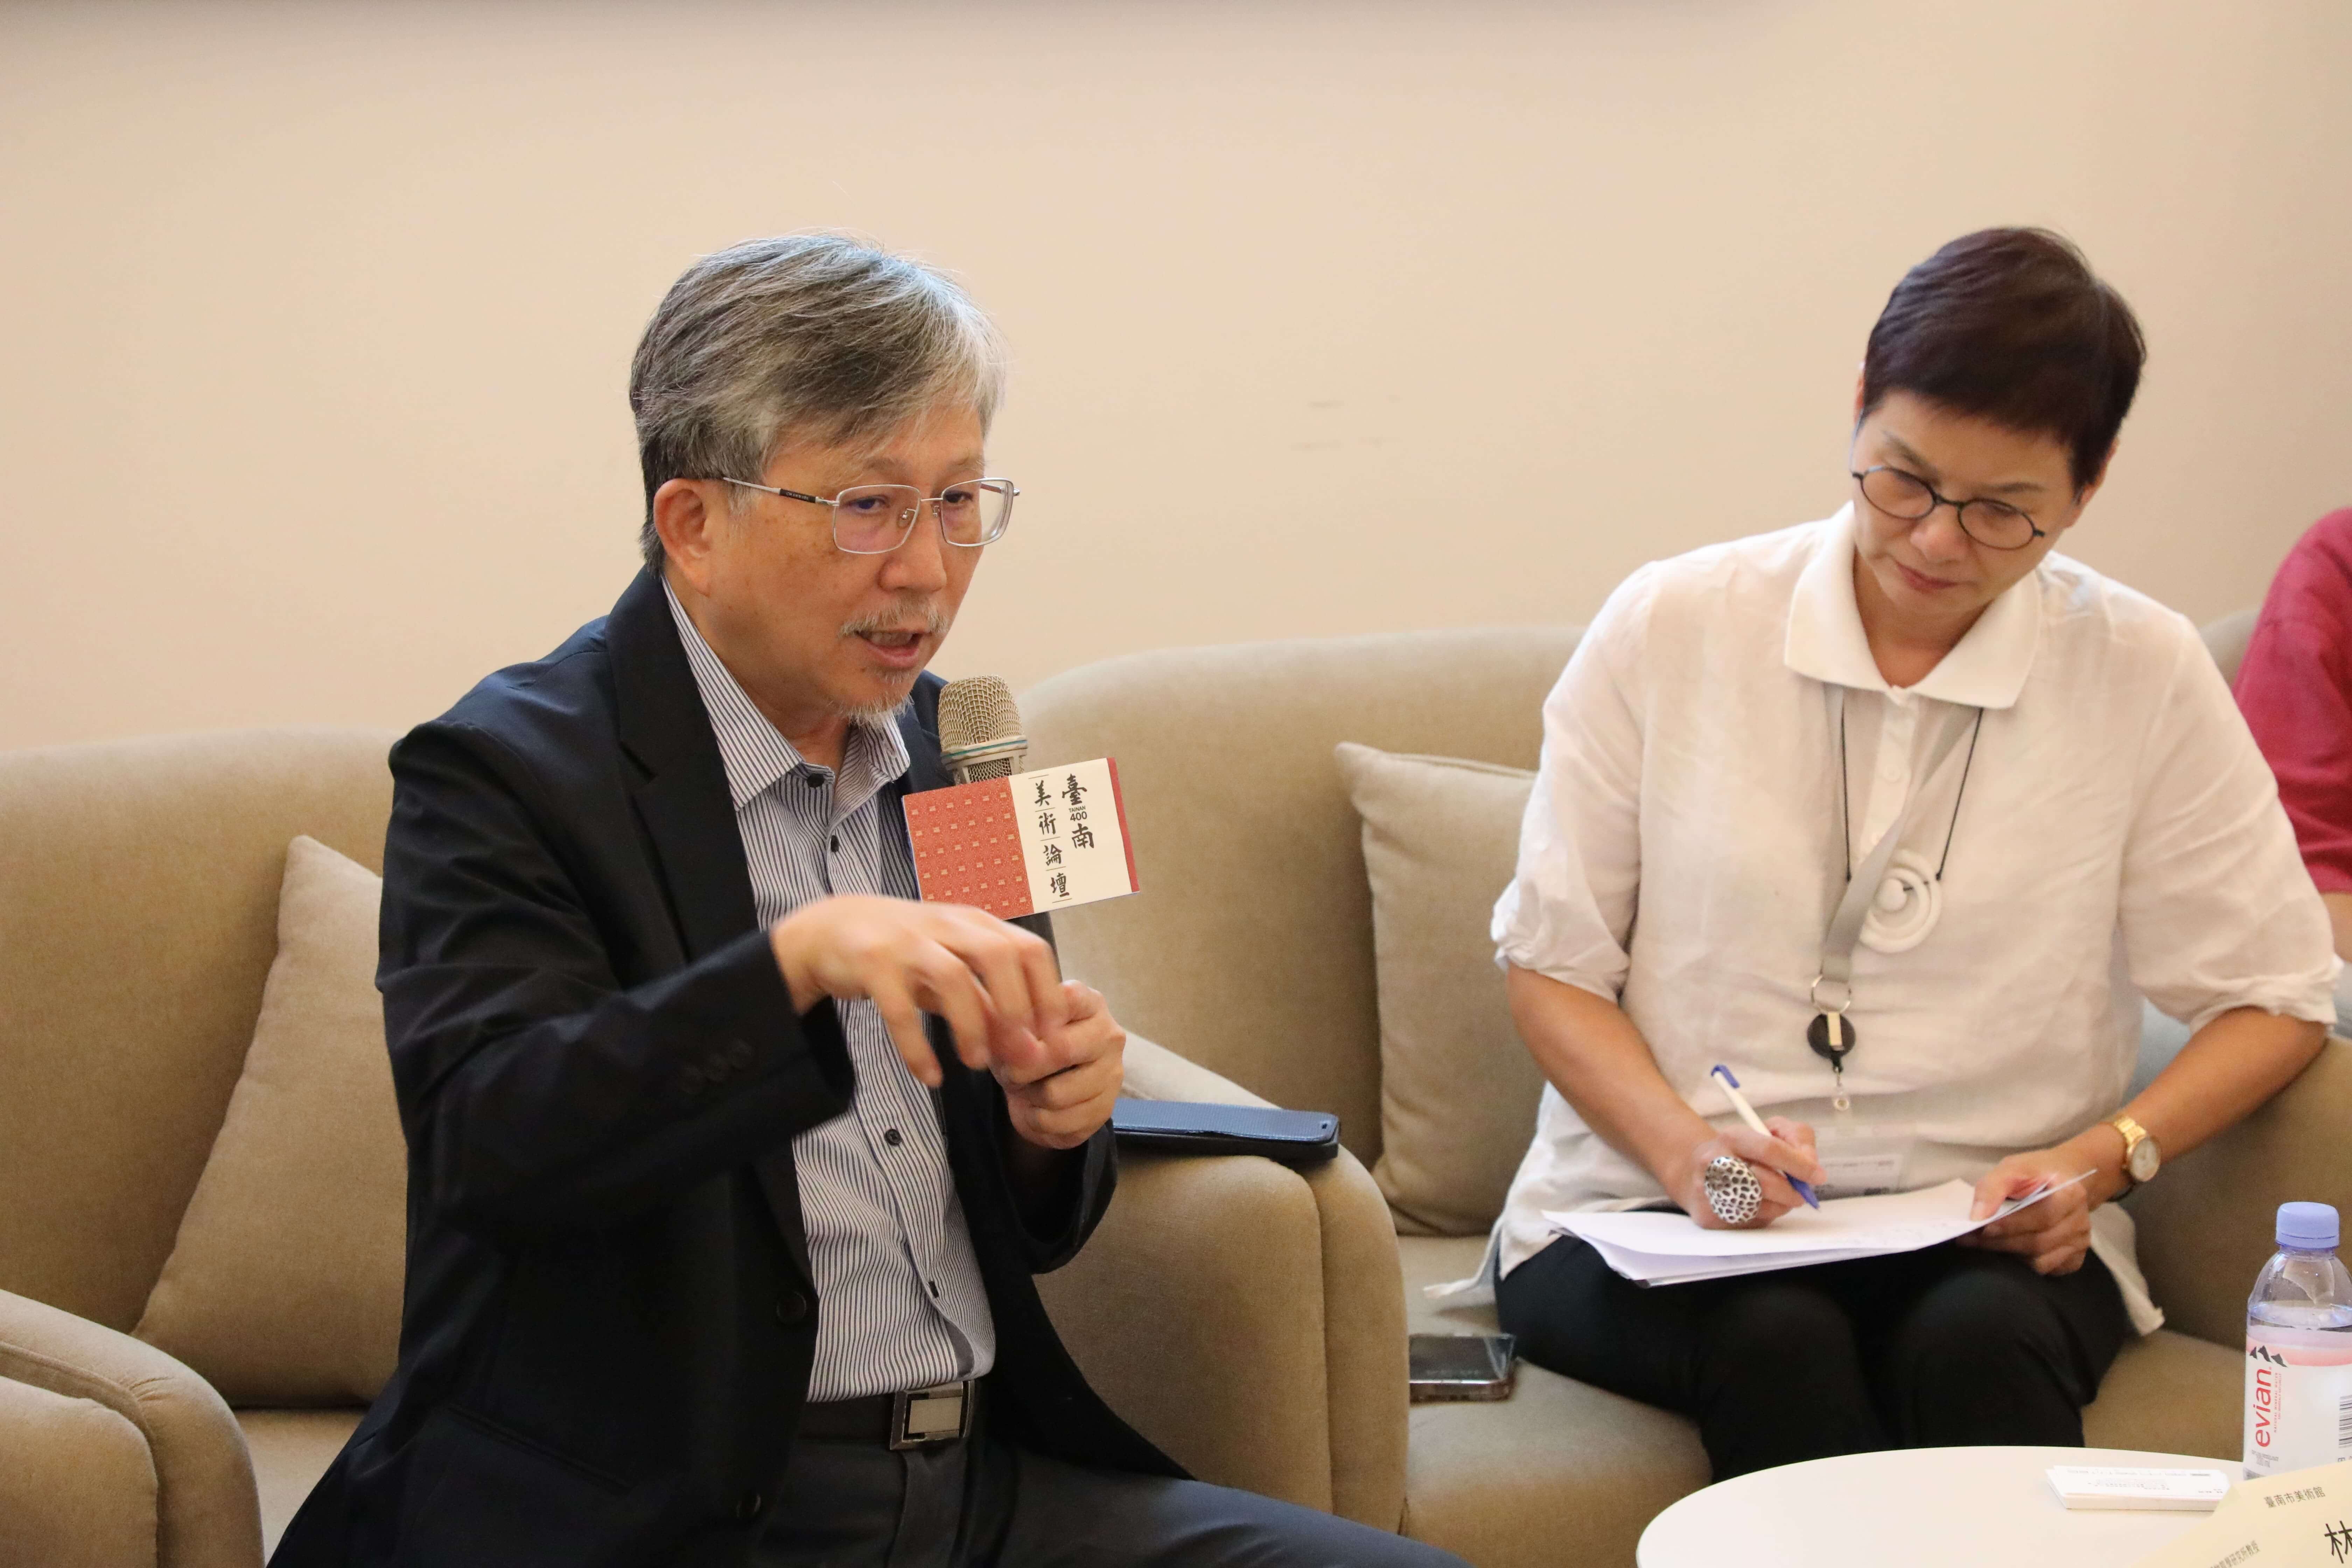 南美館舉辦的「臺南美術400+」論壇由廖仁義教授擔任論壇主持人。（南美館提供）